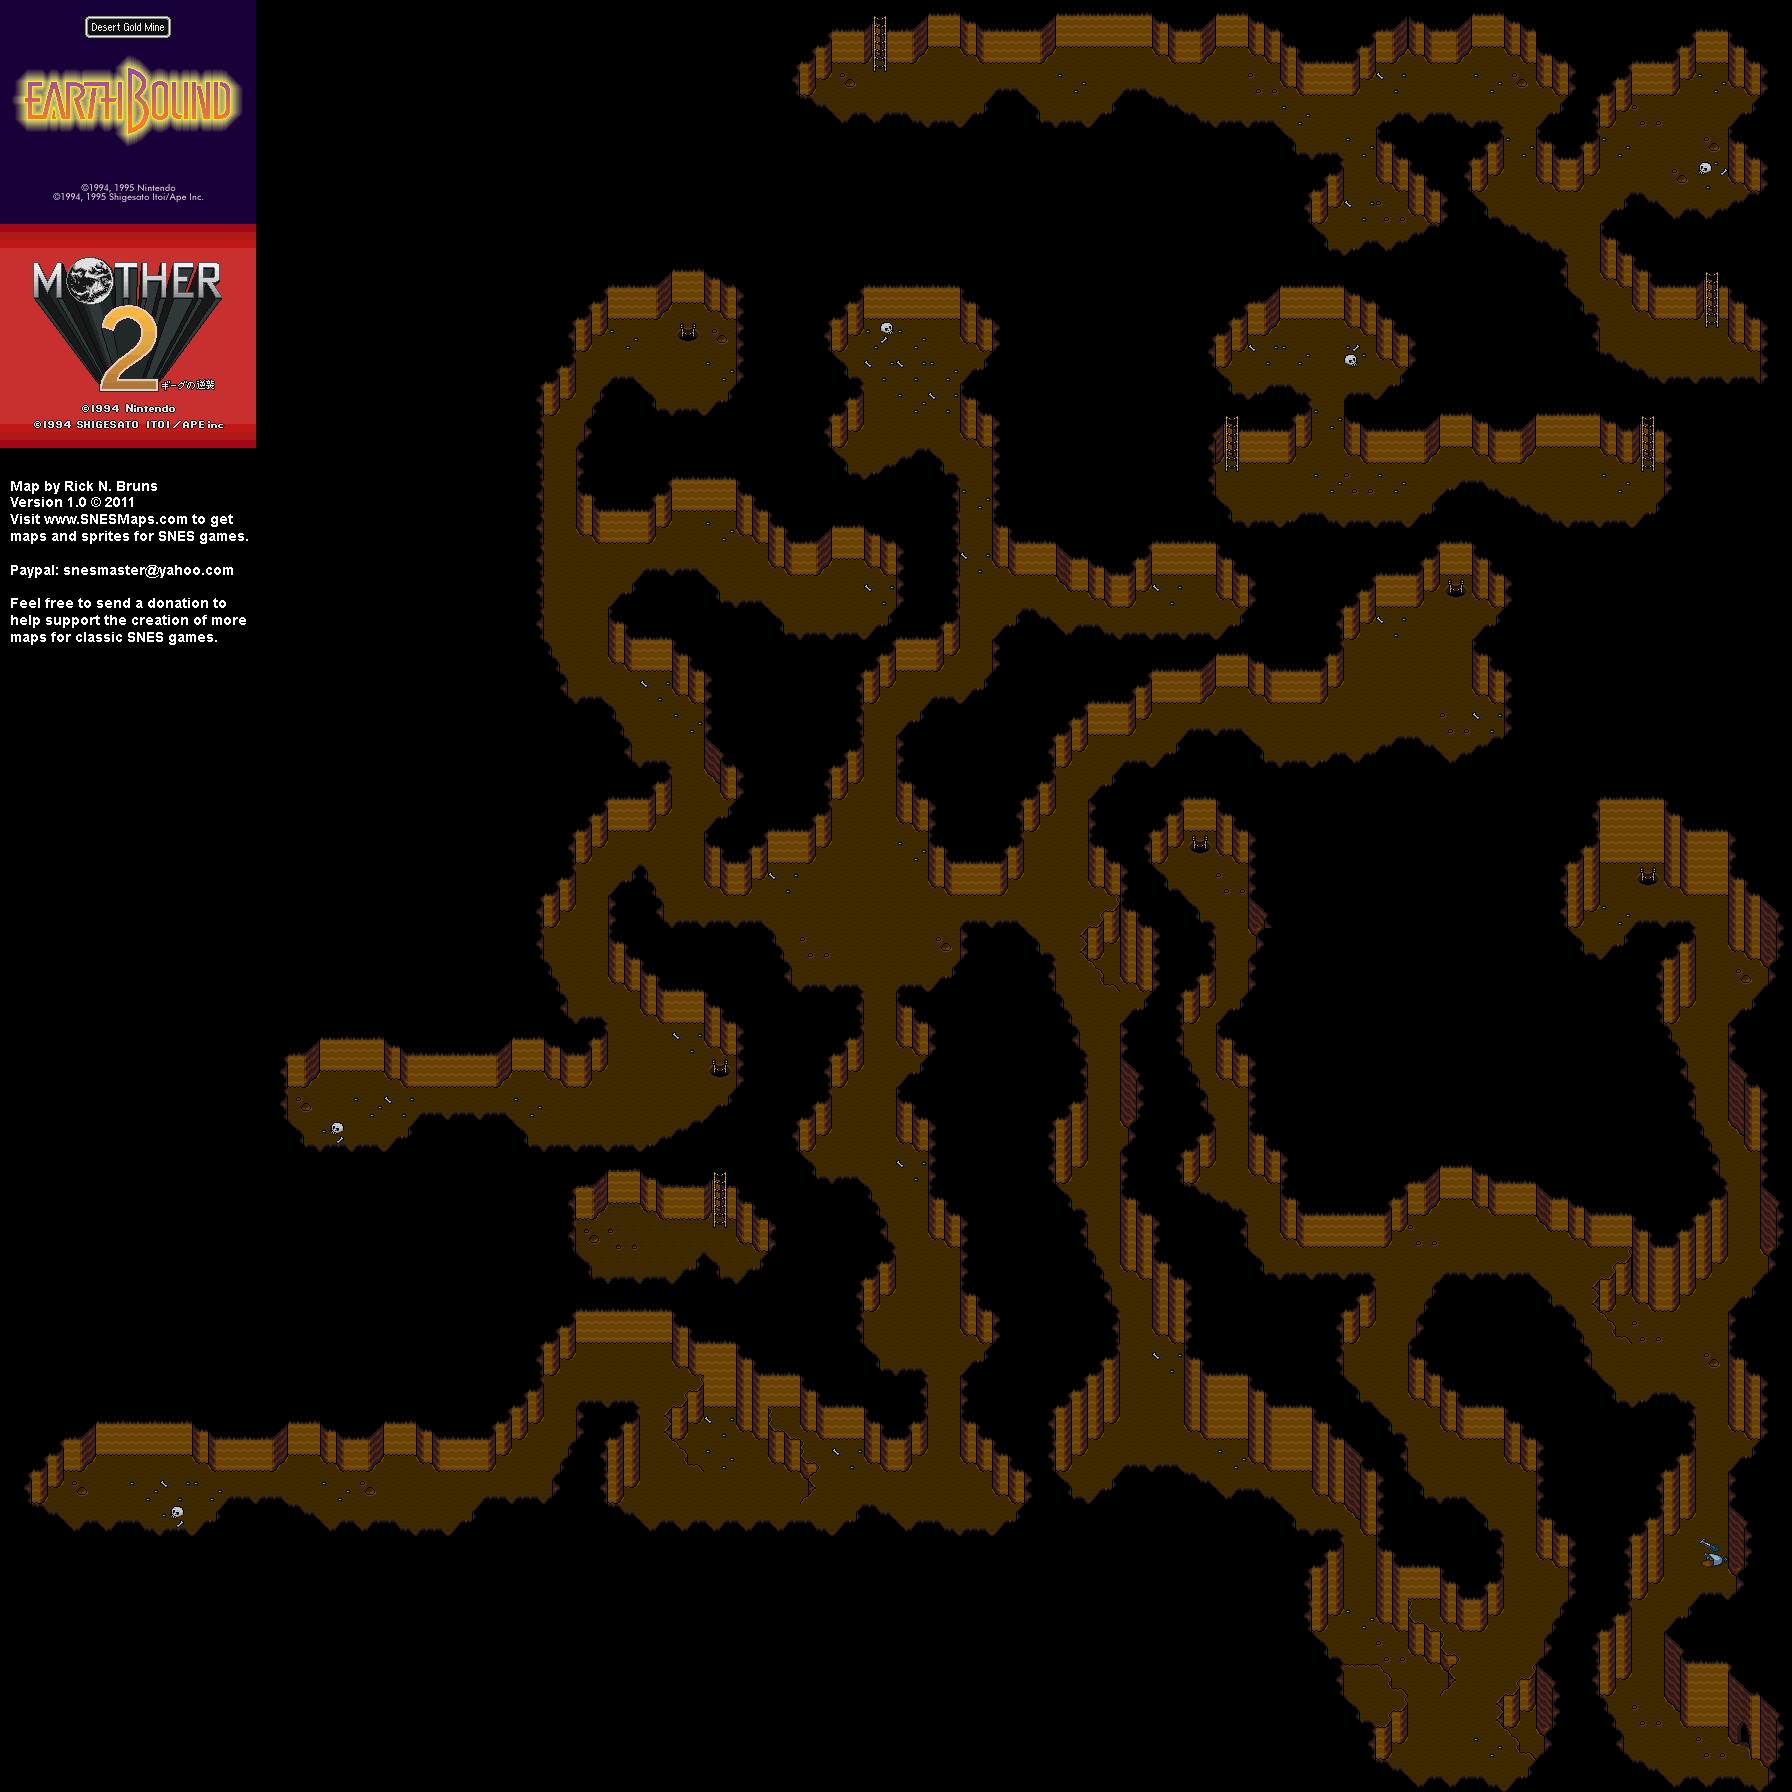 EarthBound (Mother 2) - Desert Gold Mine Super Nintendo SNES Map BG